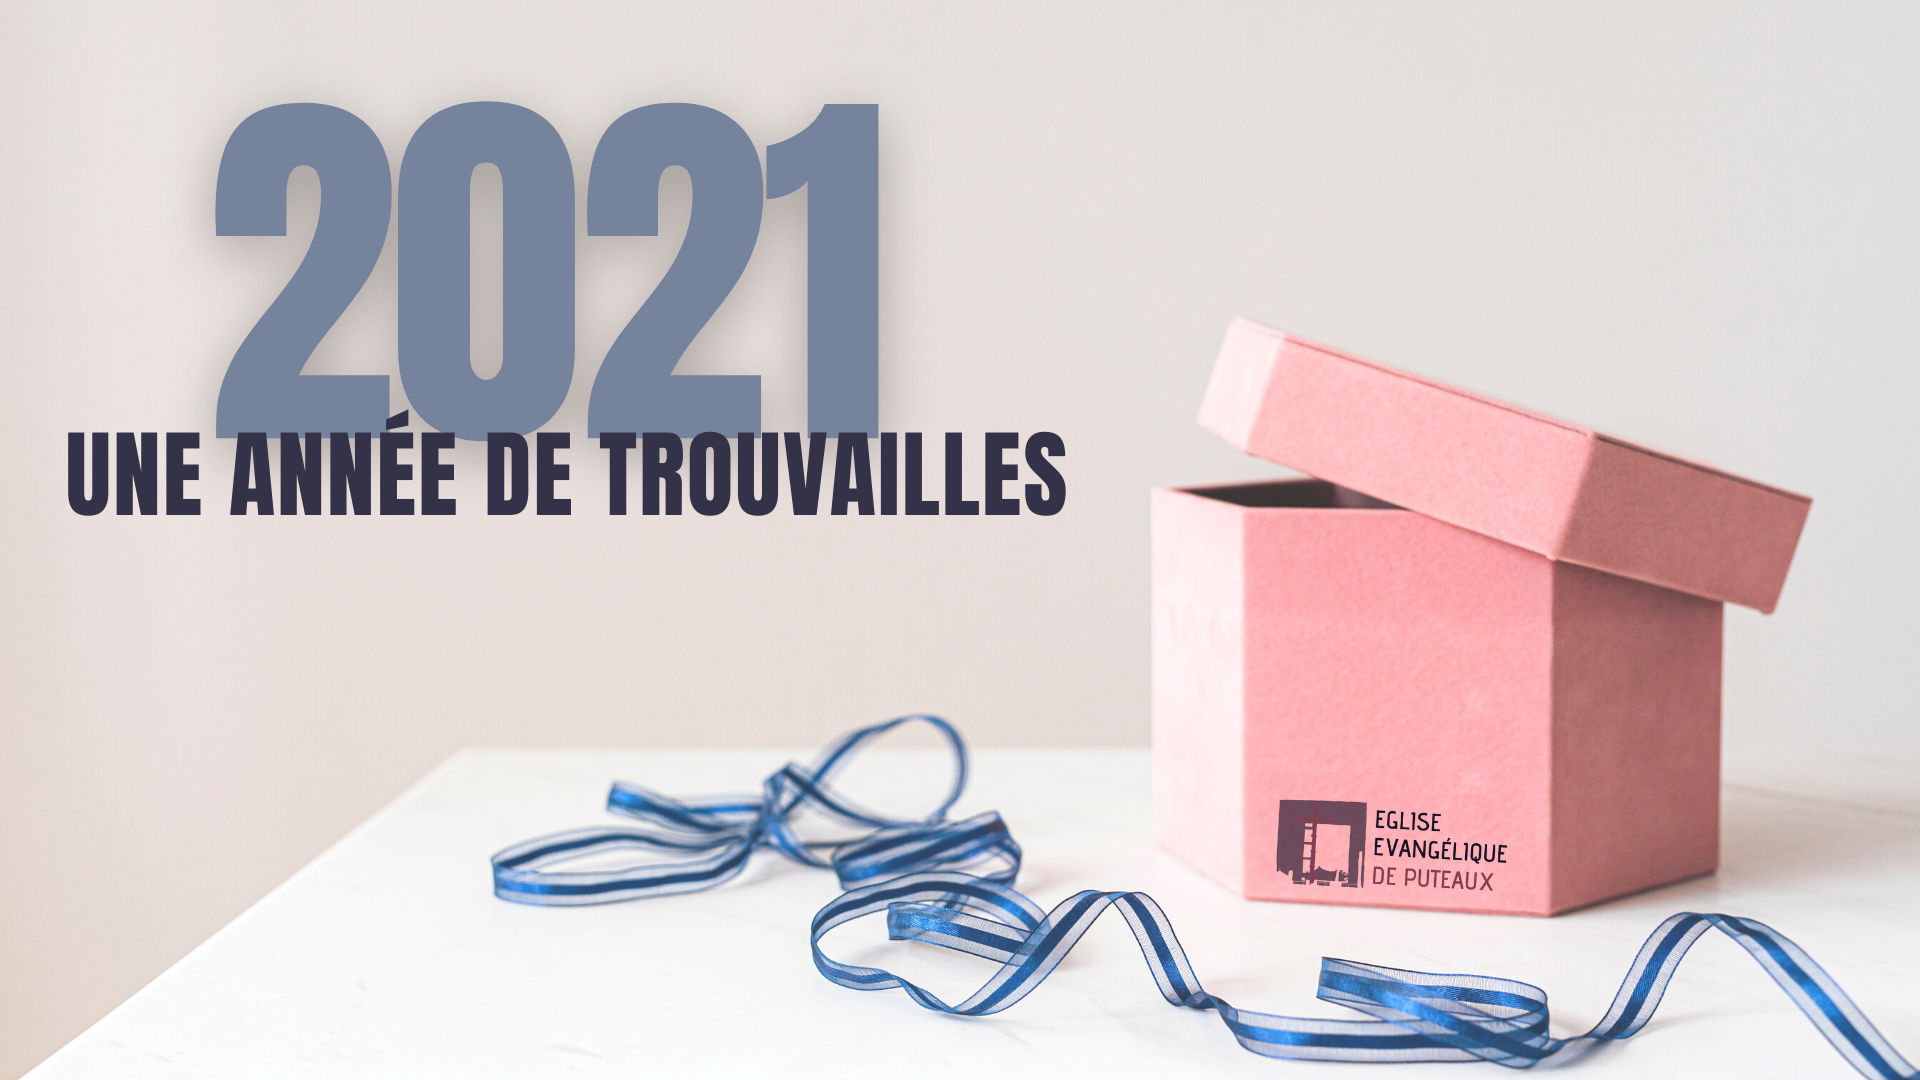 2021_une_année_de_trouvailles_1080x920